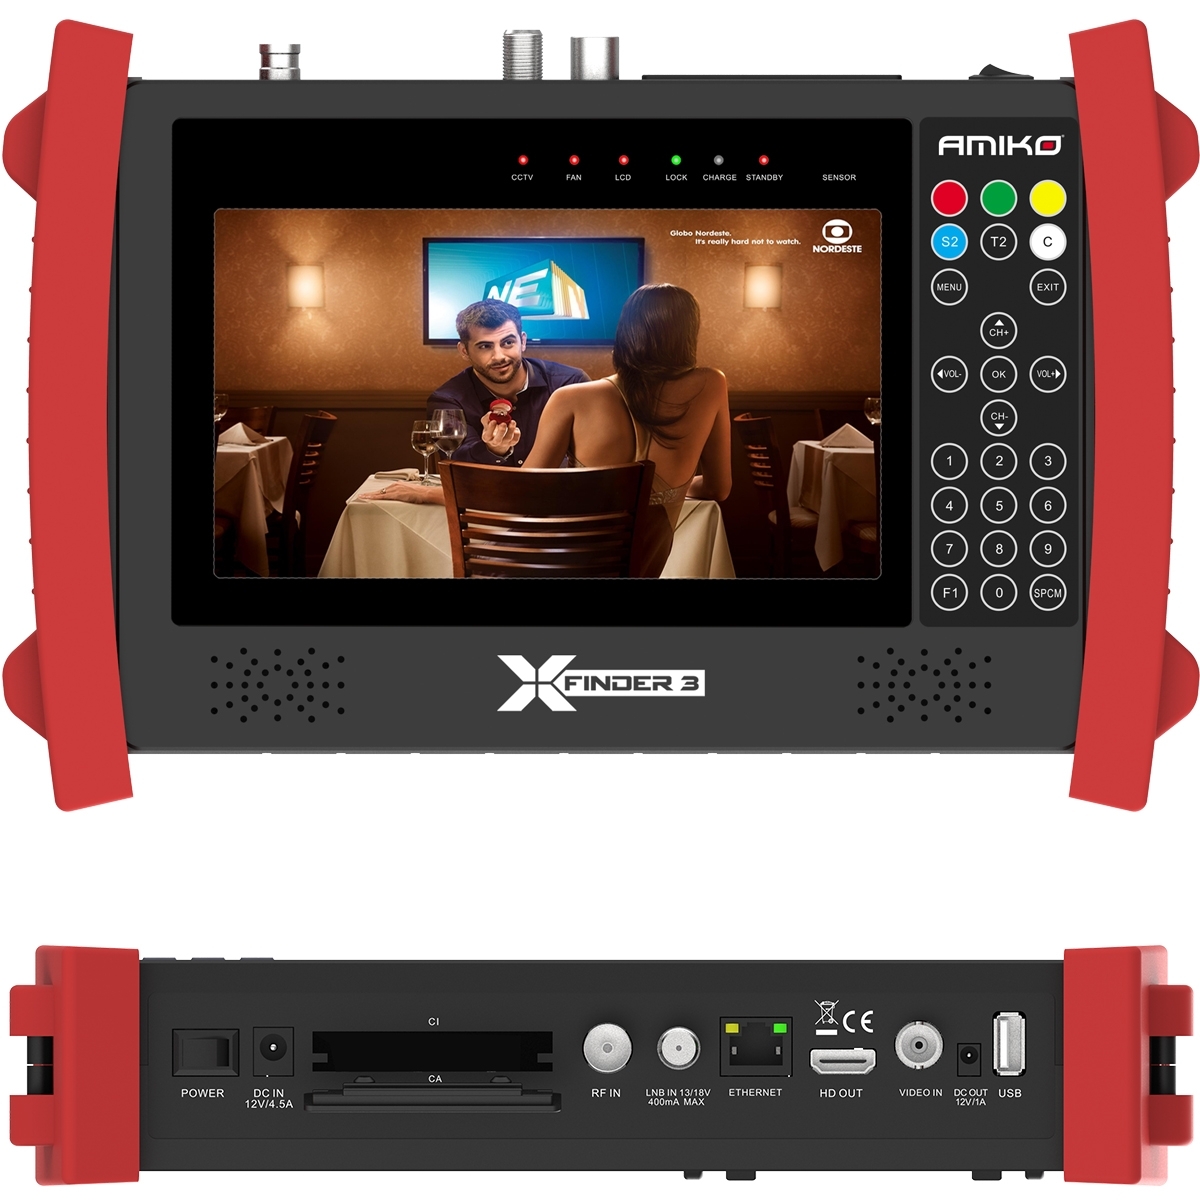 Amiko X-Finder 3 HD DVB-S/S2 + C/T/T2 Satfinder LCD Display Messgerät Akku